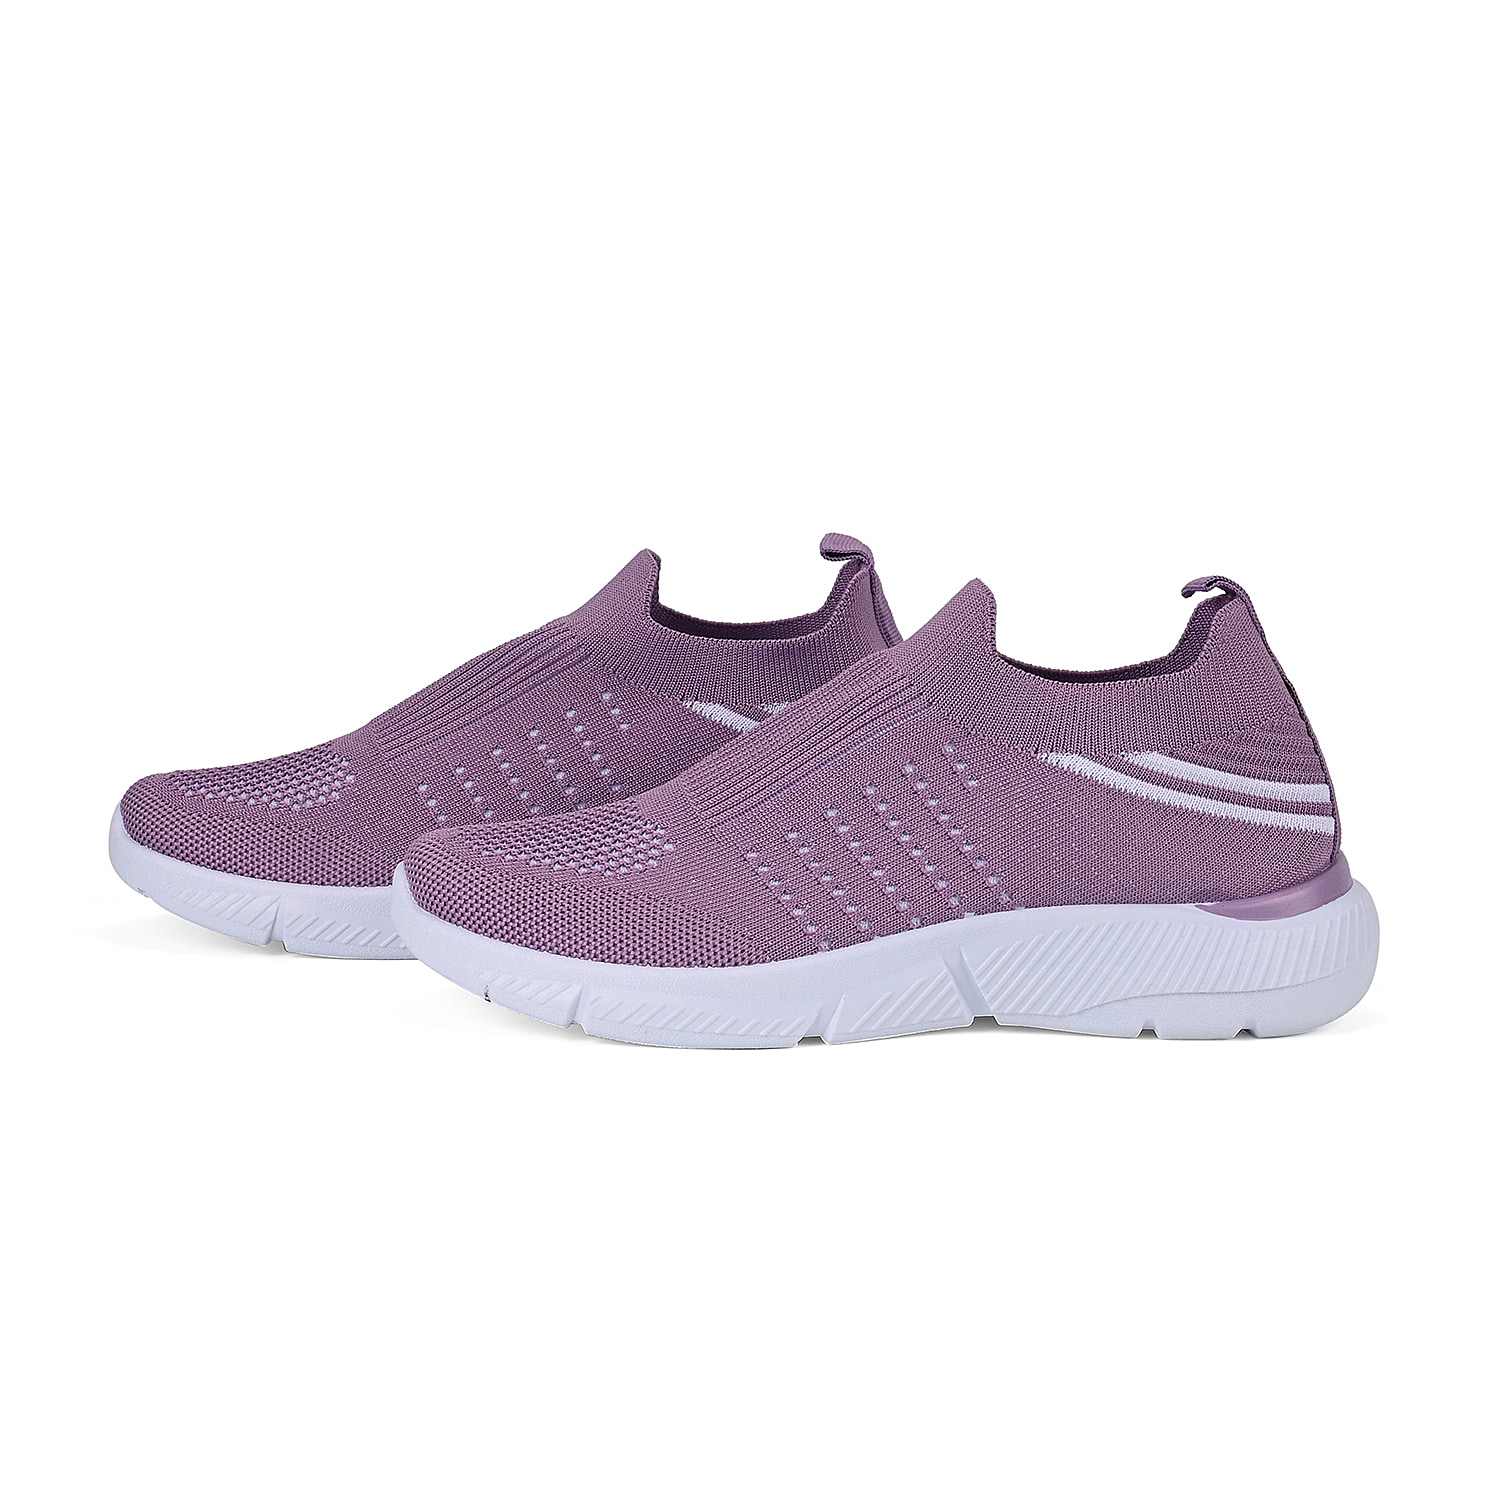 Ladies-Shoe-Size-3-Lilac-White